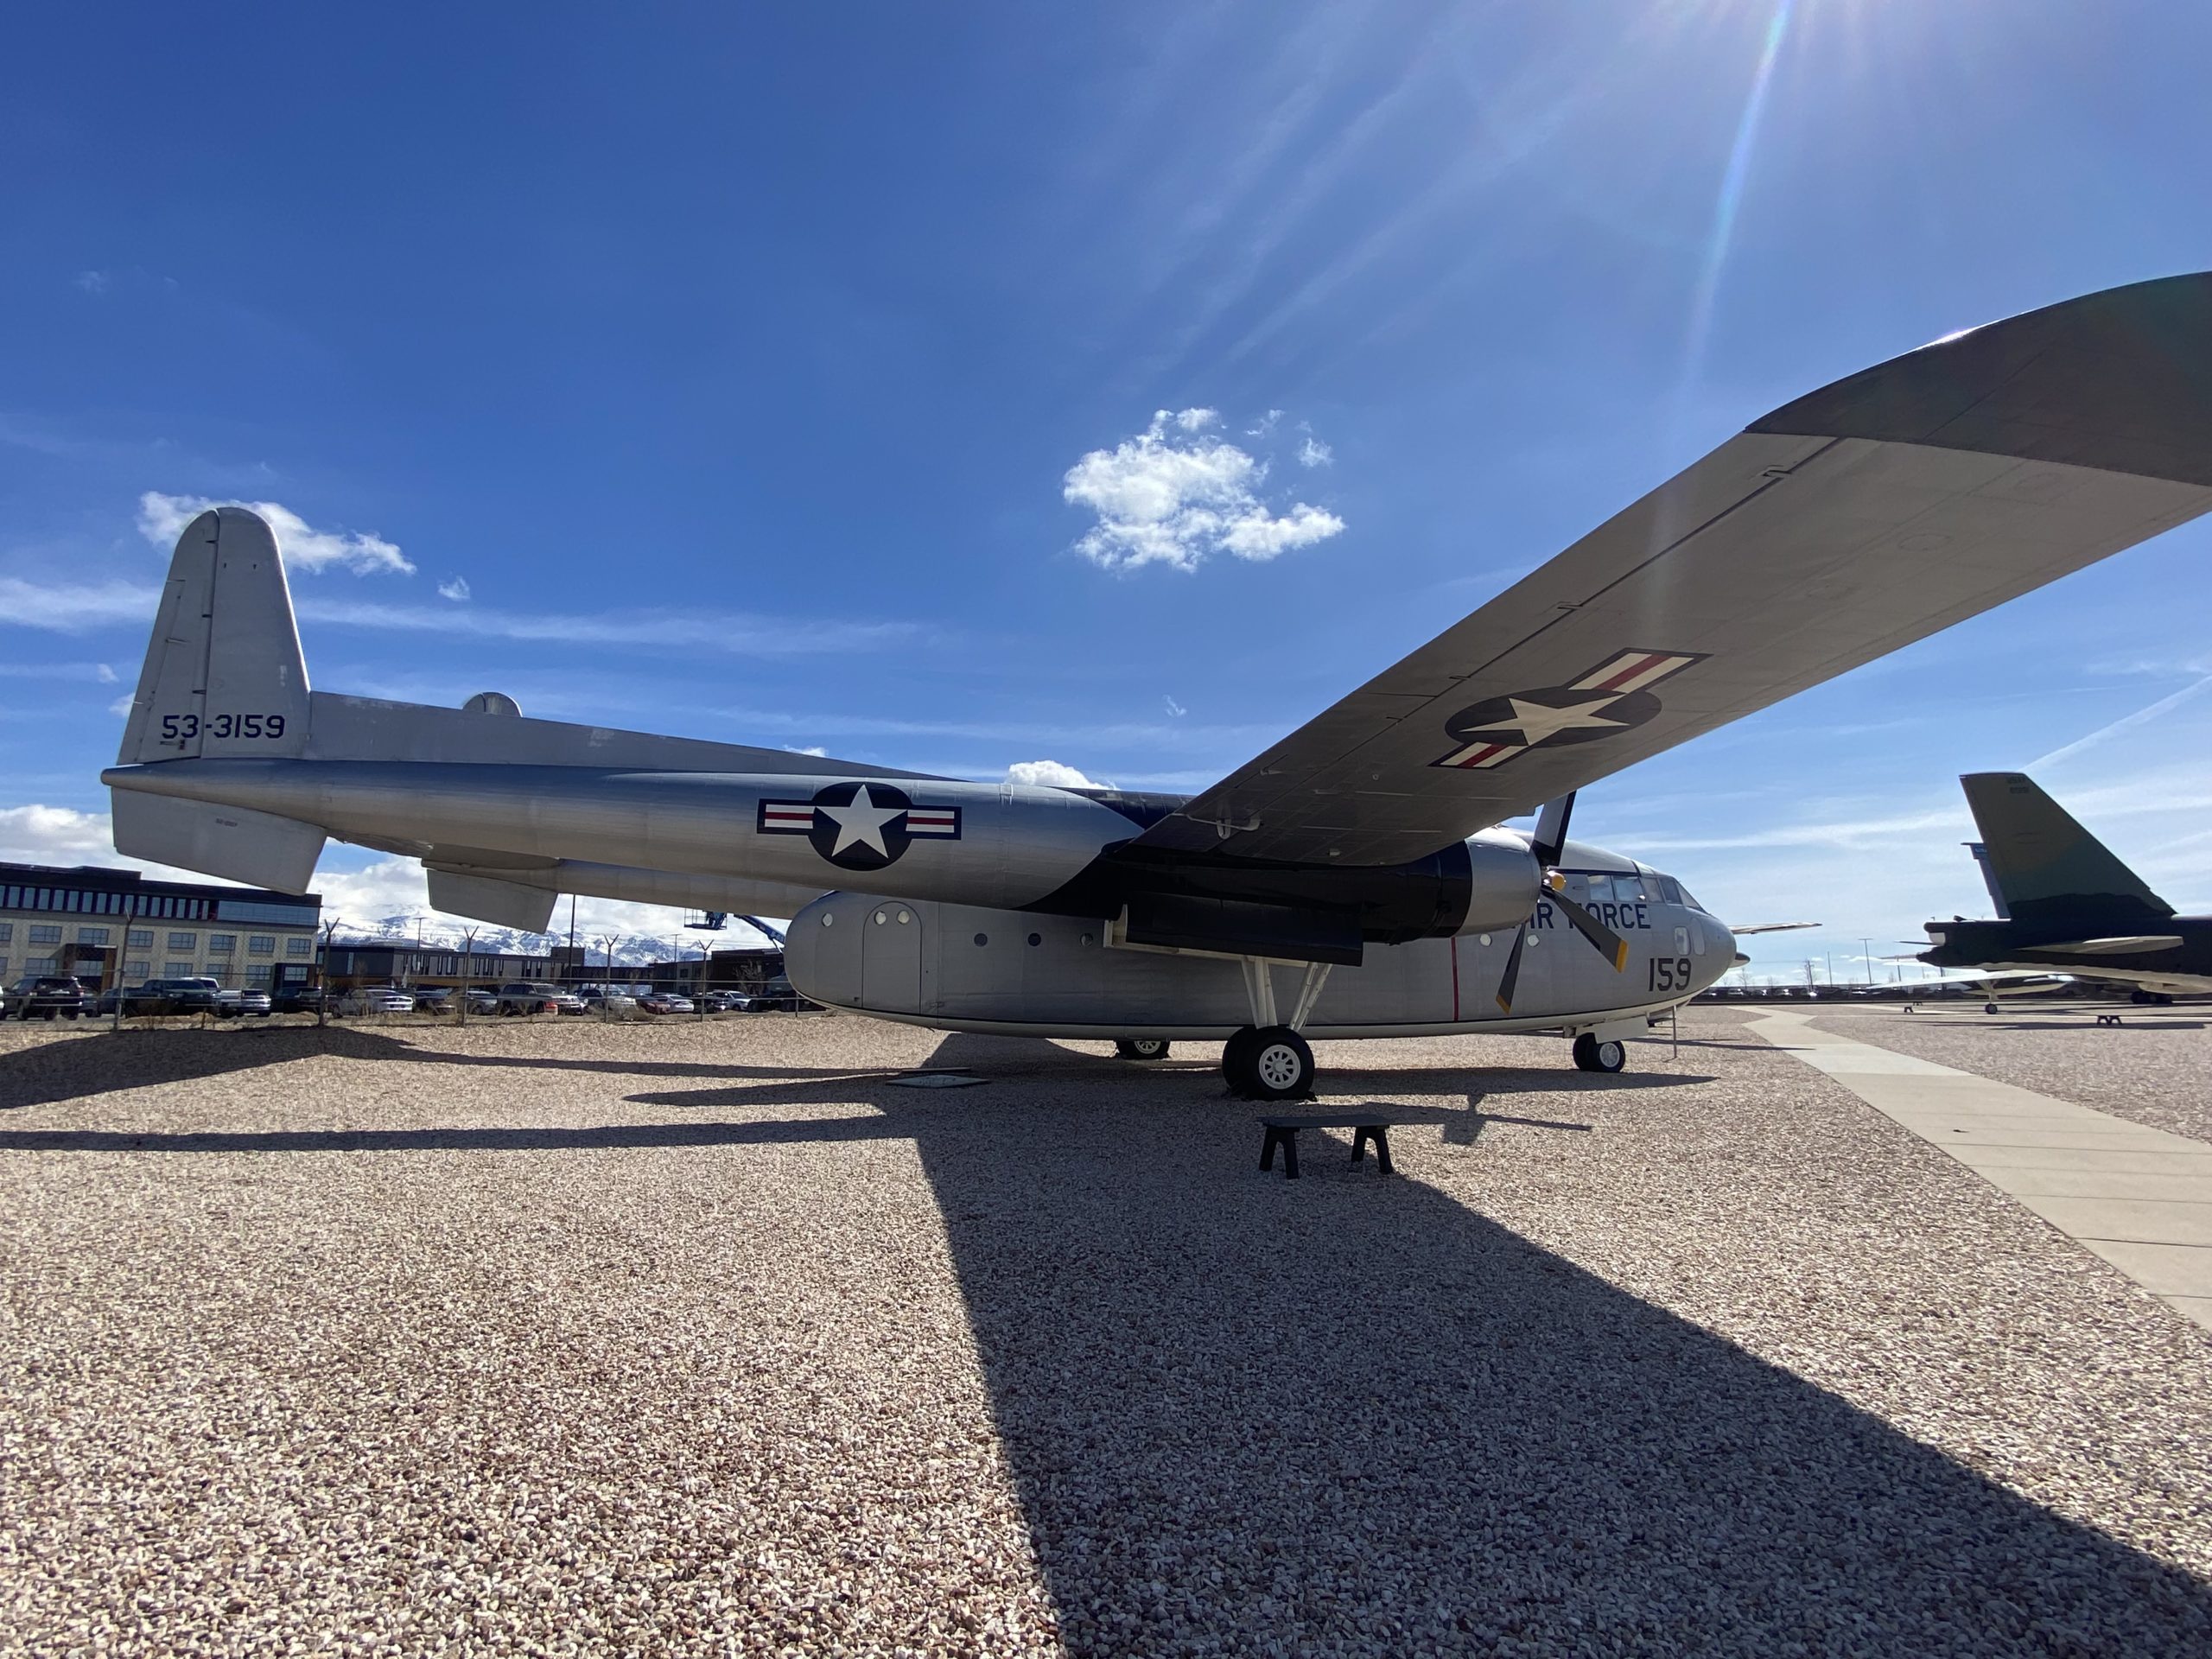 Fairchild C-119G Flying Boxcar